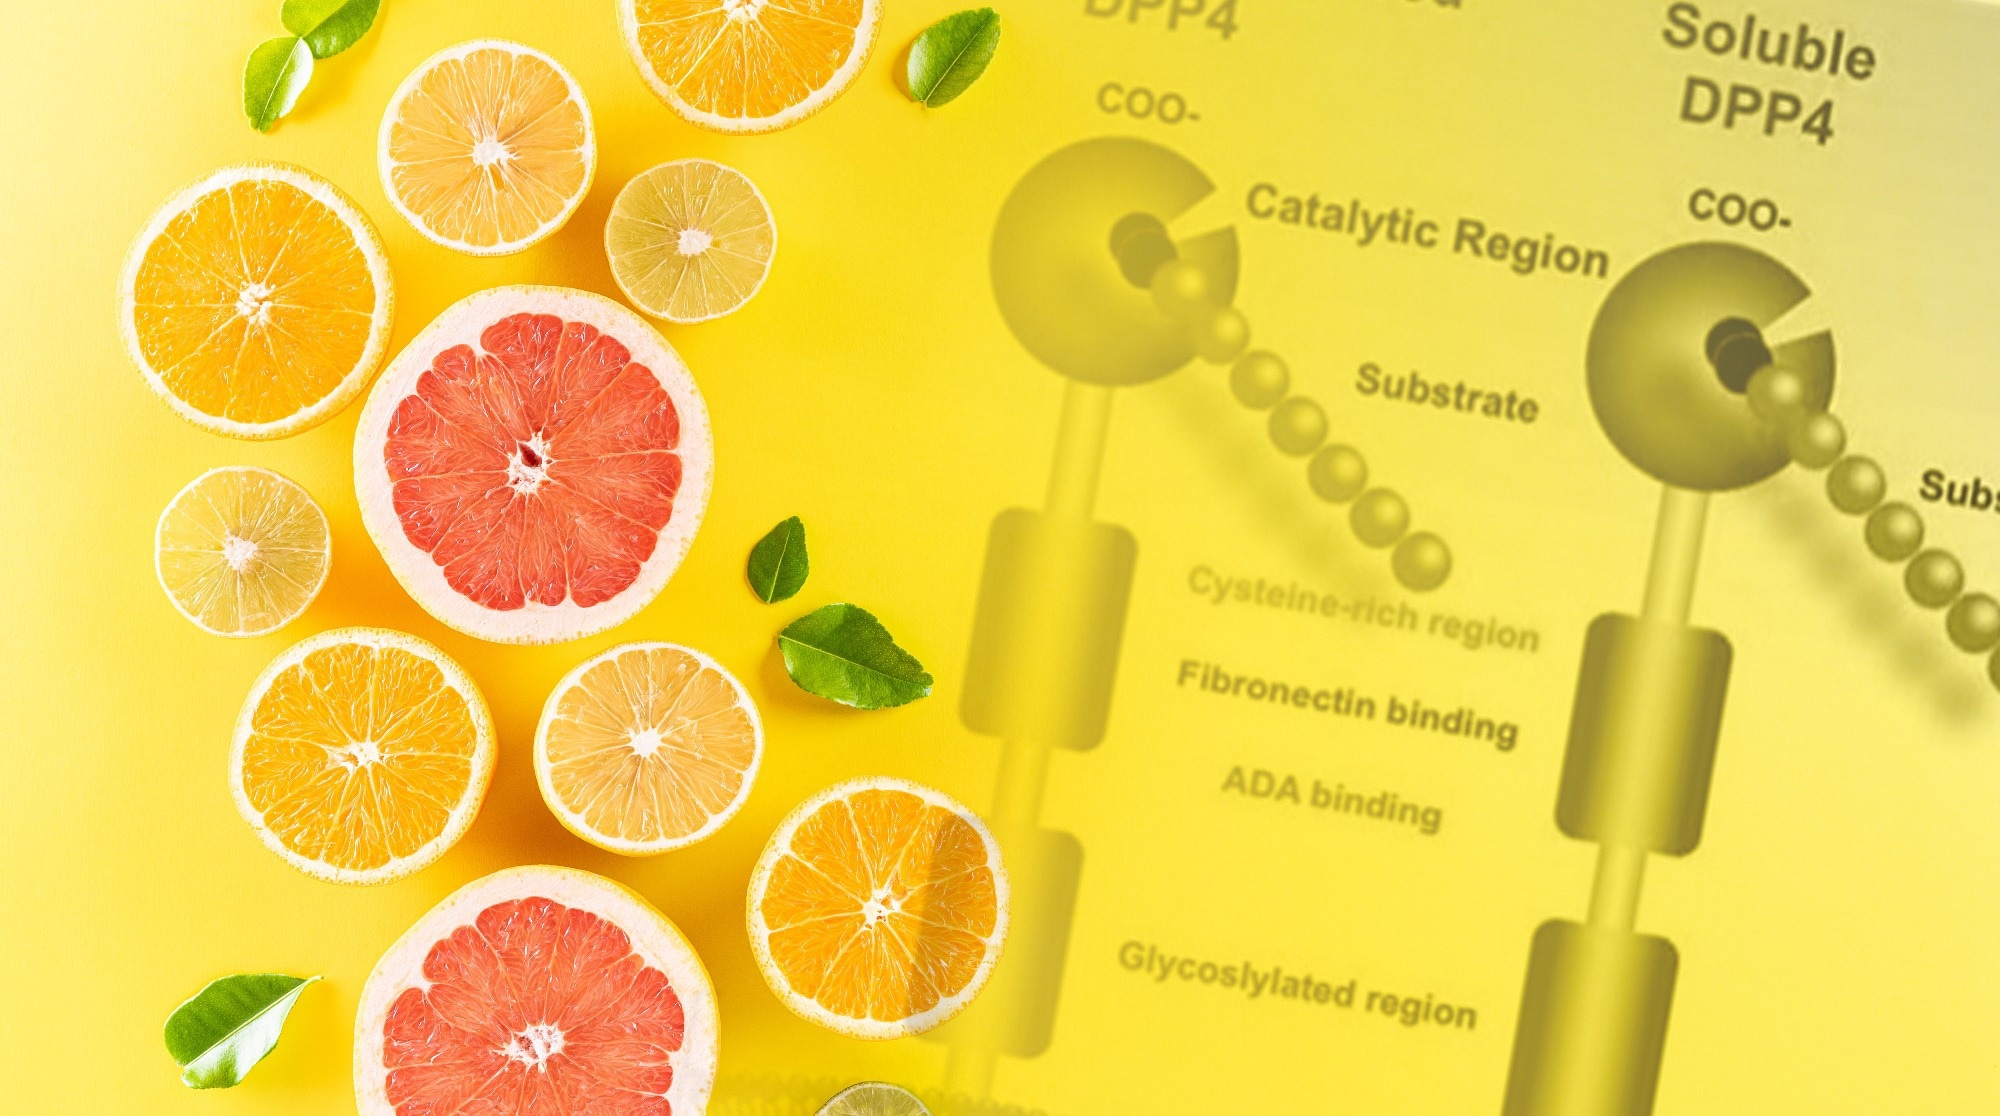 Citrus aurantium for blood sugar balance